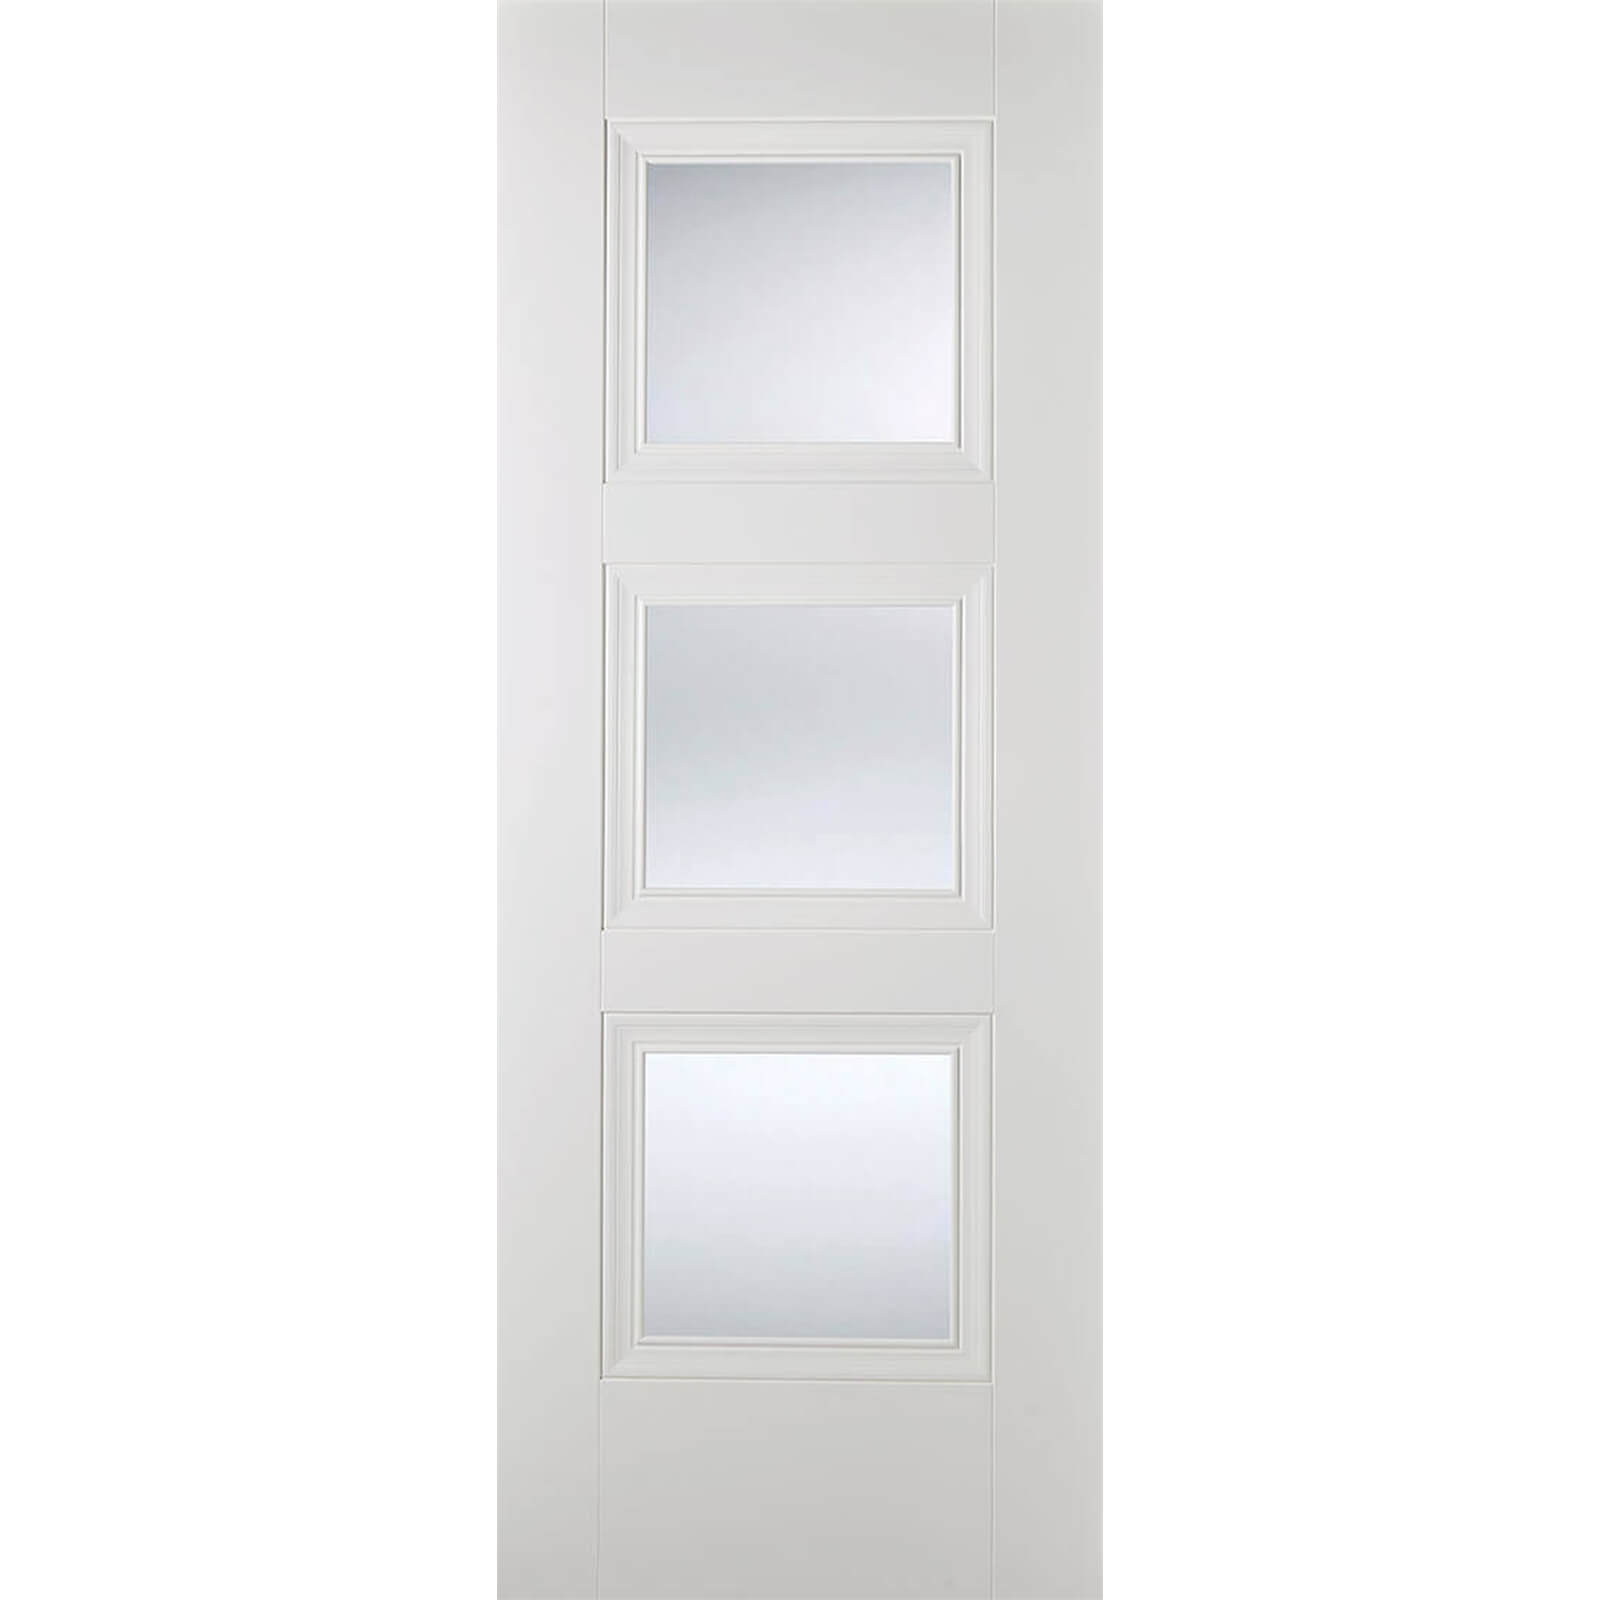 Amsterdam Internal Glazed Primed White 3 Lite Door - 838 x 1981mm